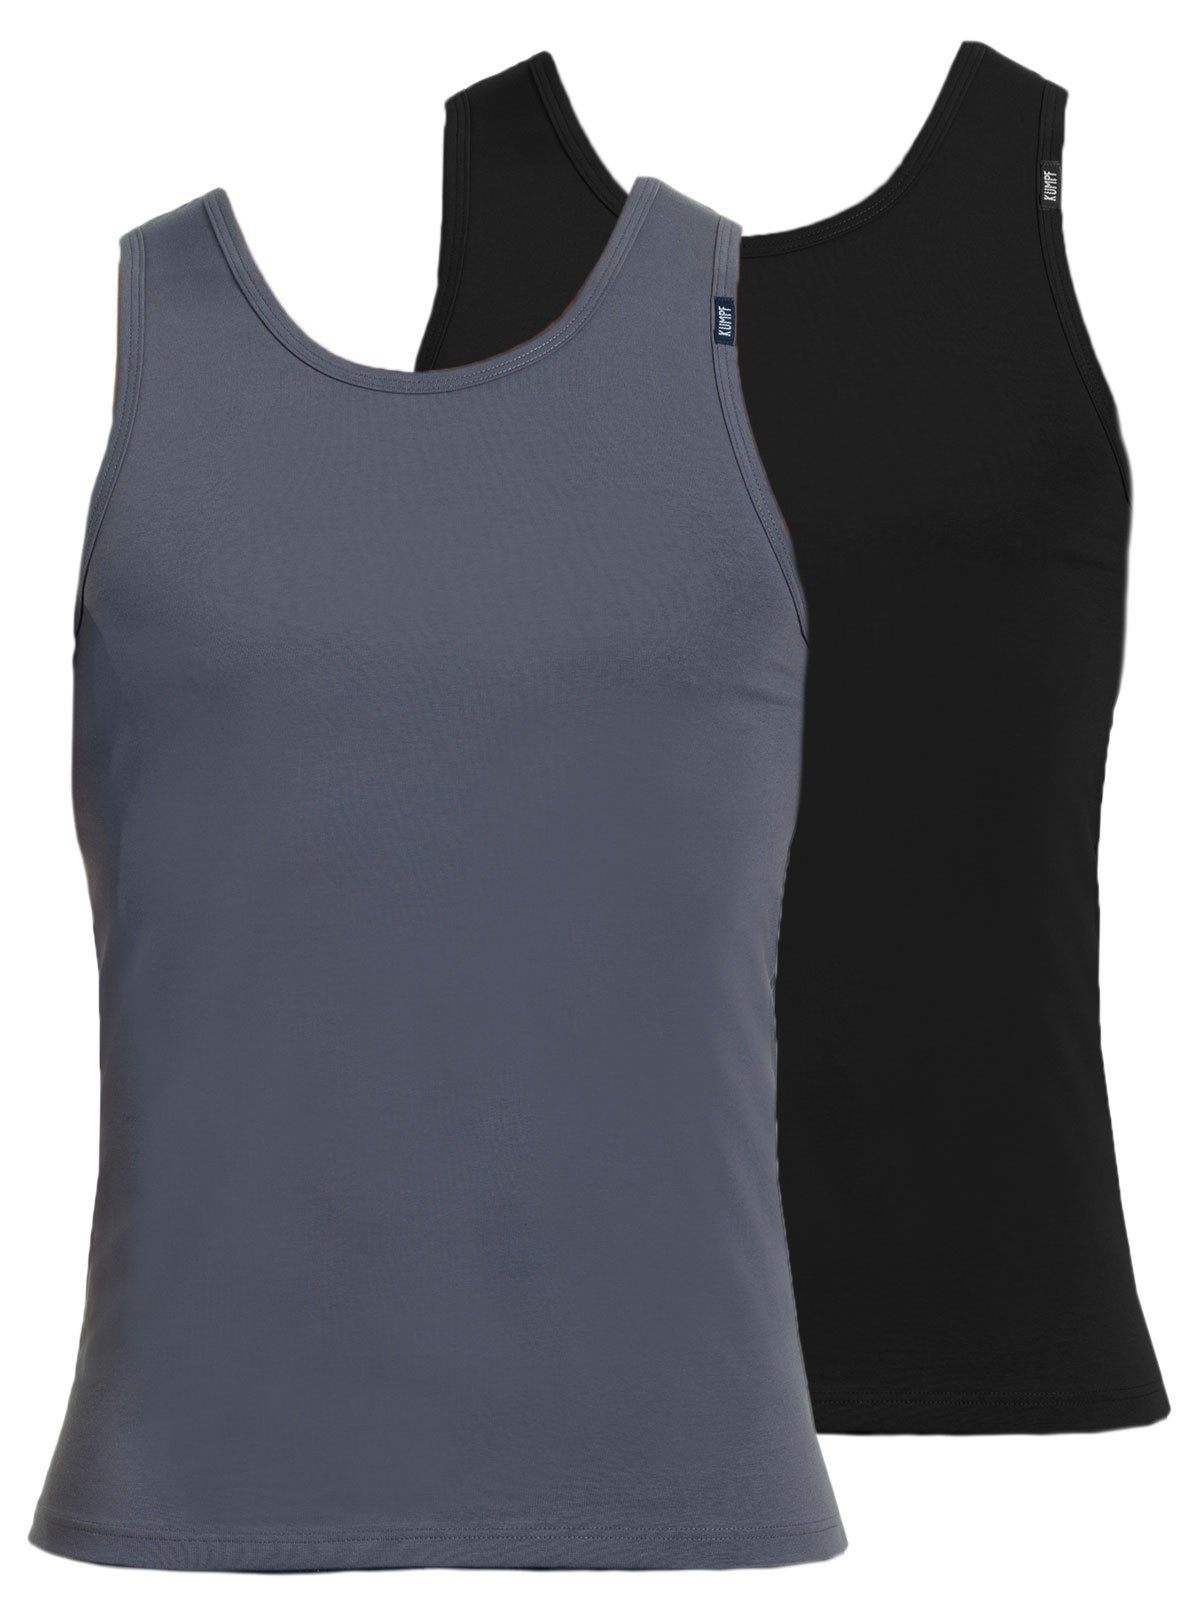 KUMPF Achselhemd 2er Sparpack Herren Unterhemd Bio Cotton (Spar-Set, 2-St) hohe Markenqualität mittelgrau schwarz